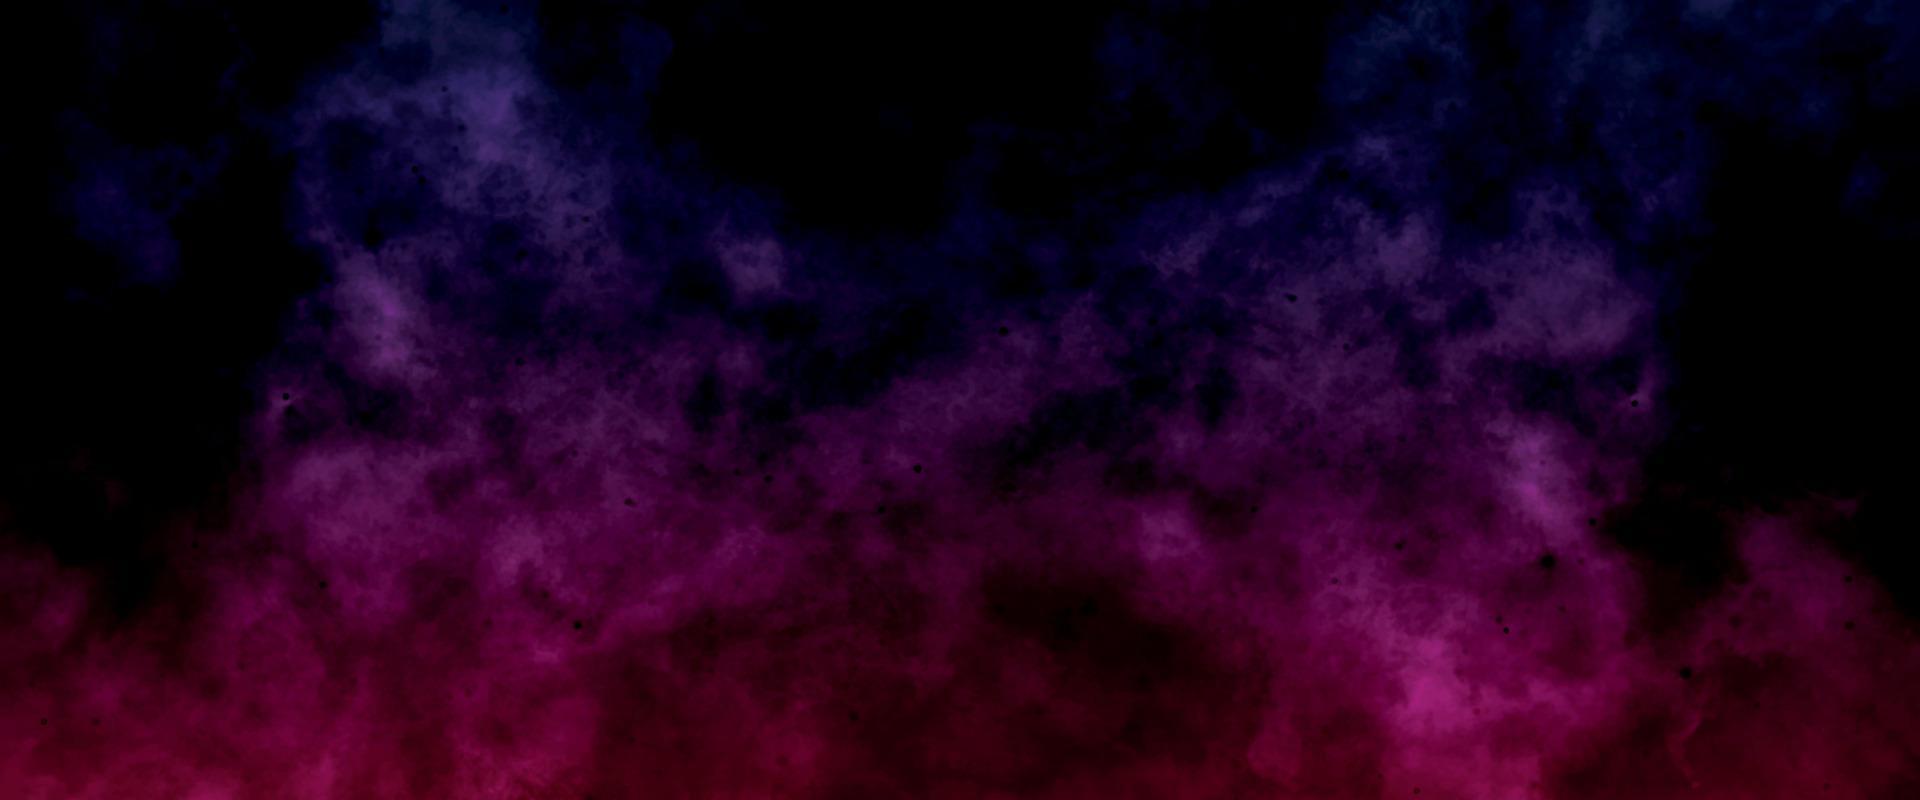 färgrik lila och rosa rök. magenta vattenfärg textur. abstrakt kosmisk fuchsia neon papper texturerat. duk för modern kreativ design. ljus ljus rosa bläck vattenfärg på svart bakgrund. vektor